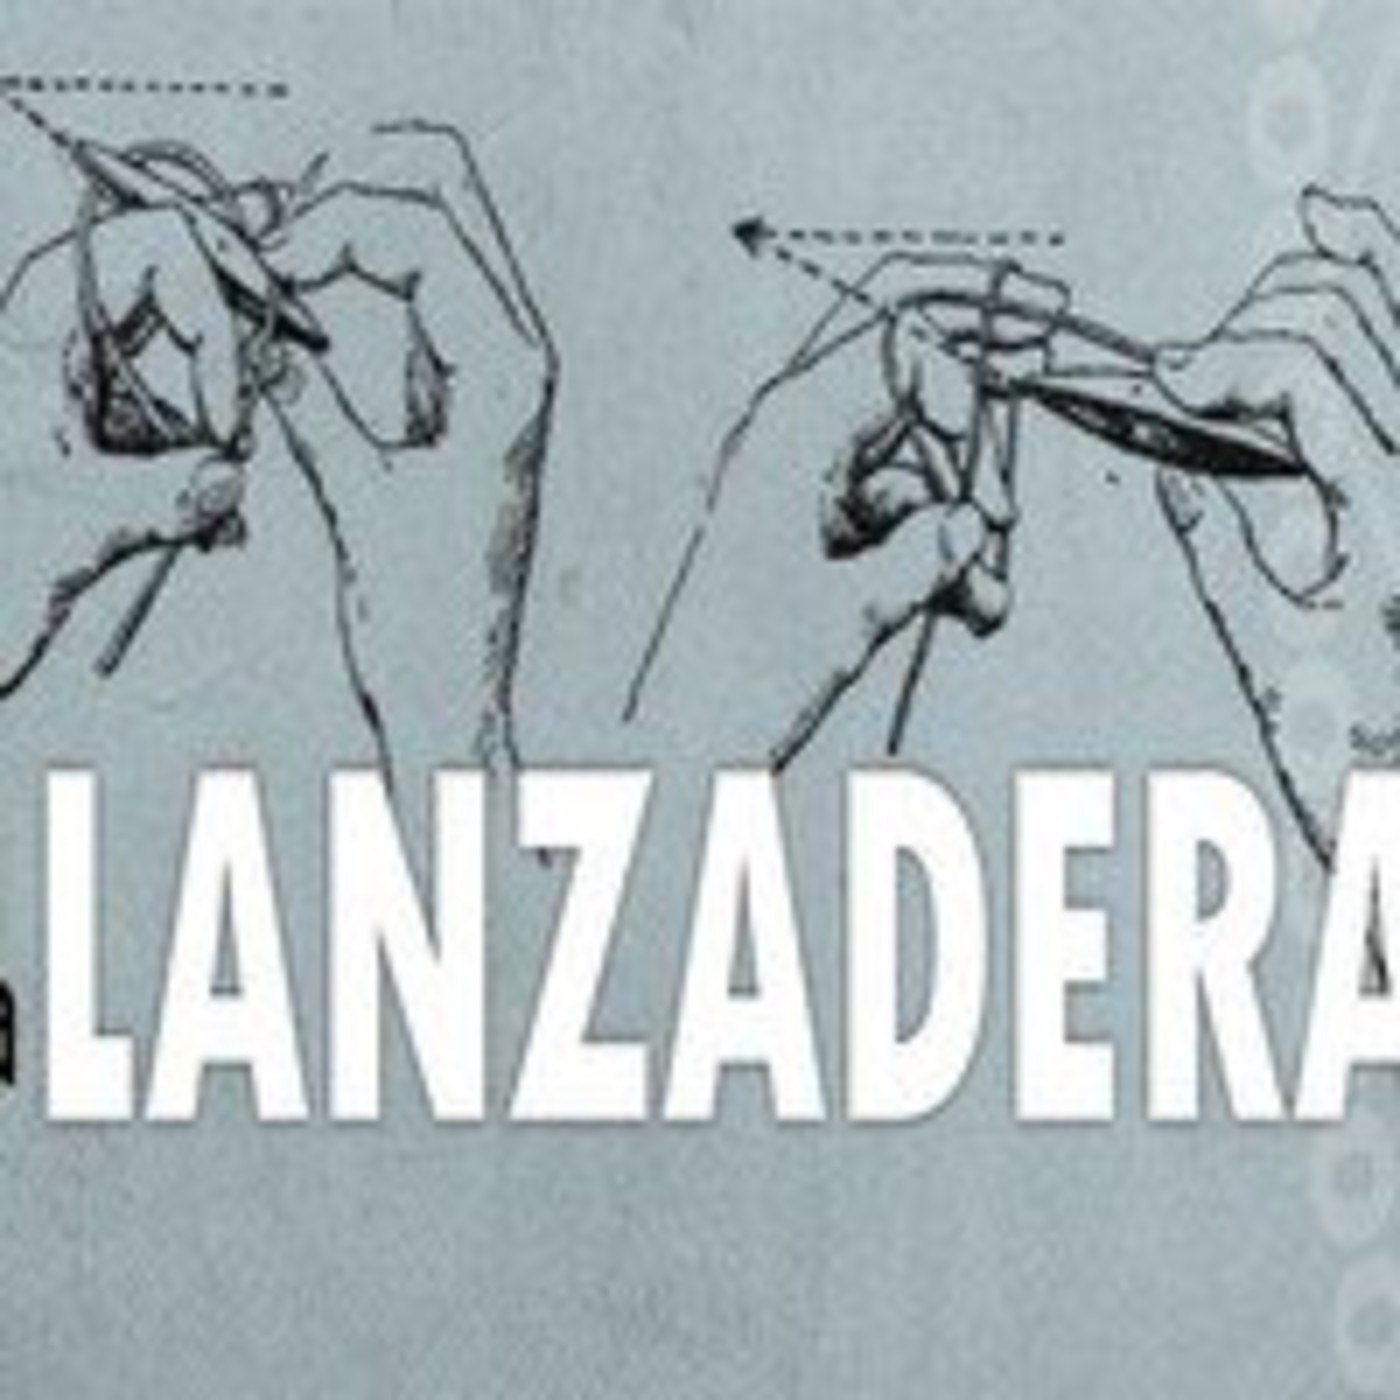 La Lanzadera - 01/1617 - 28/09/2016